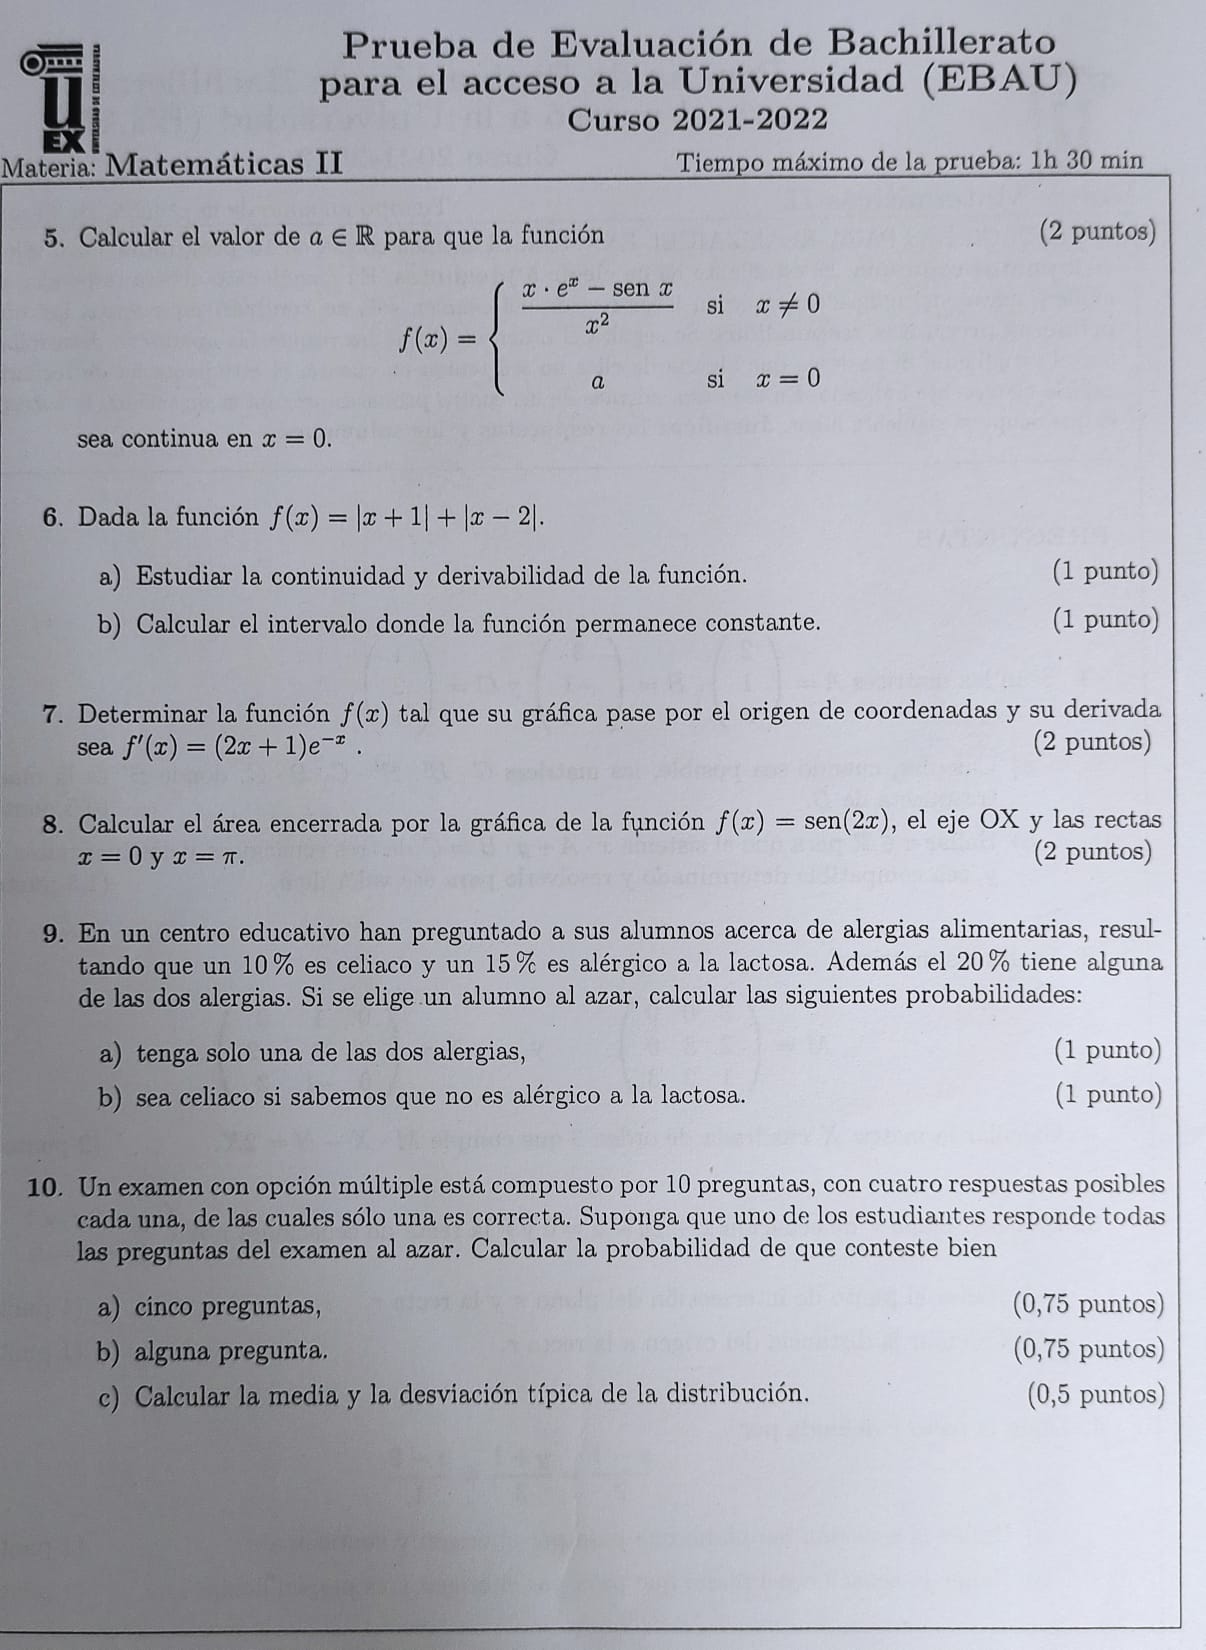 Segunda parte del examen de Matemáticas de EBAU en Extremadura